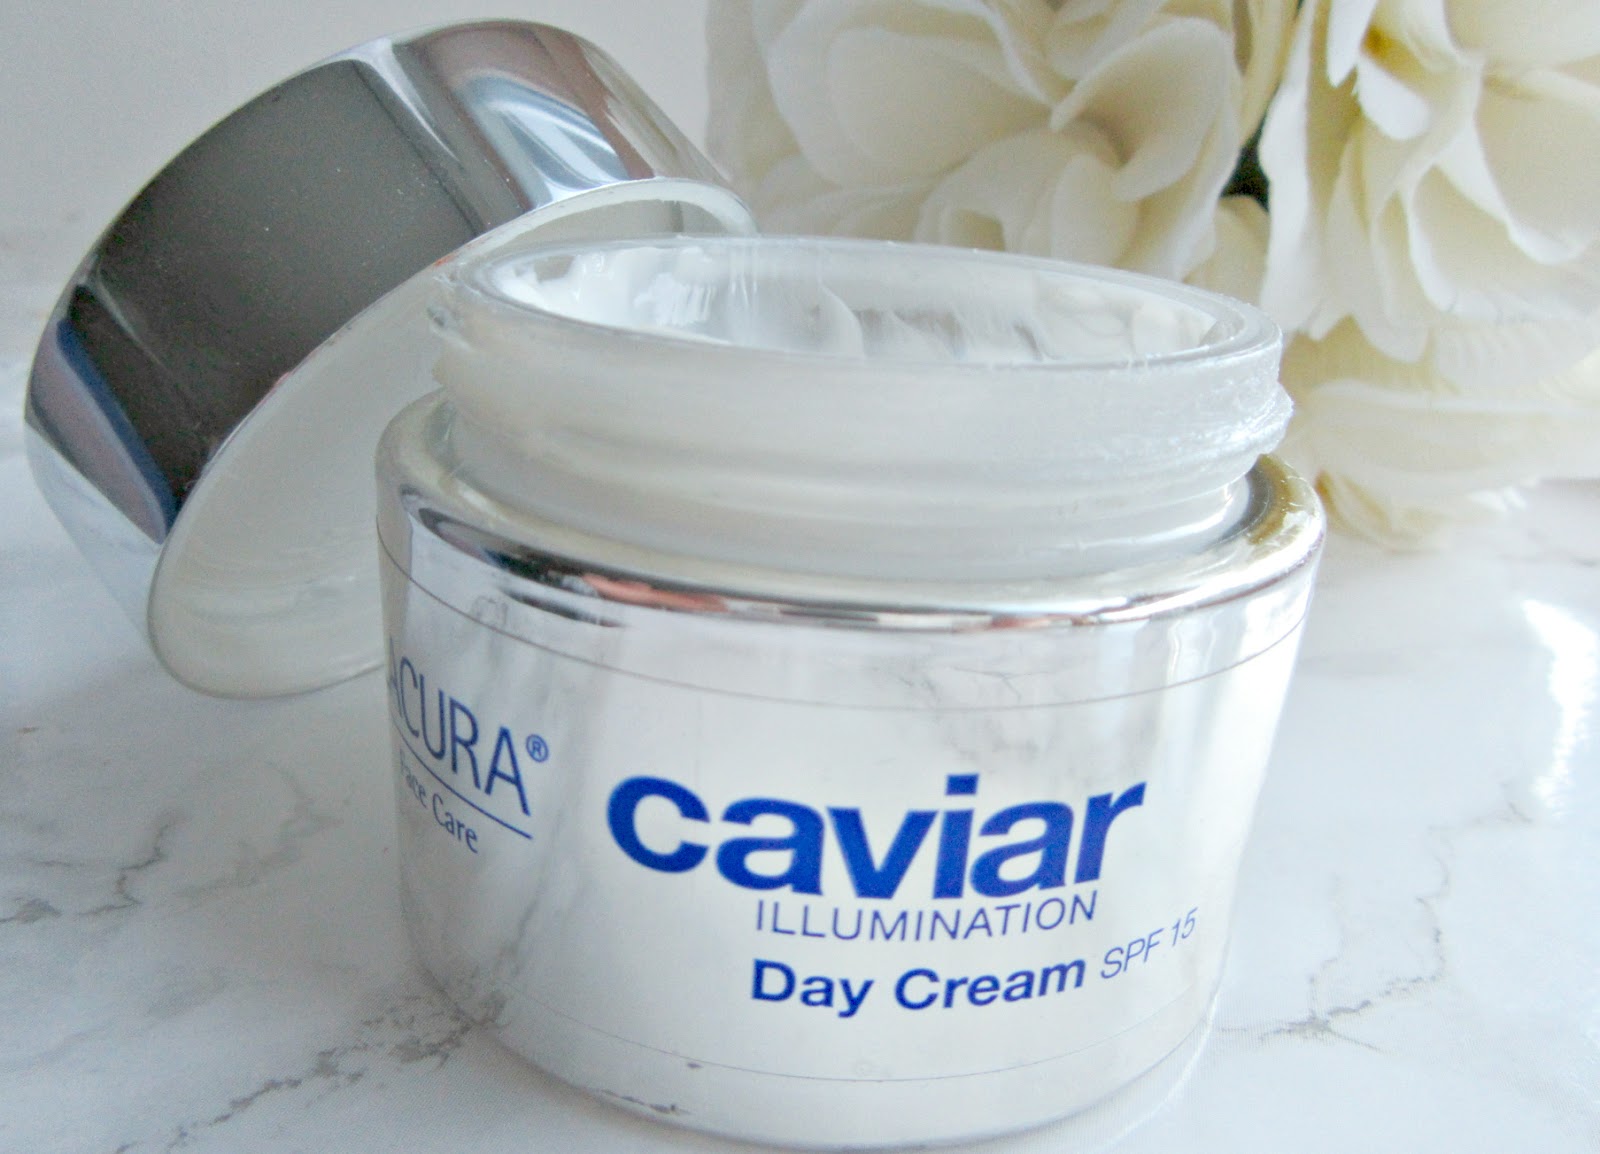 Aldi Caviar Illumination Day Cream Review